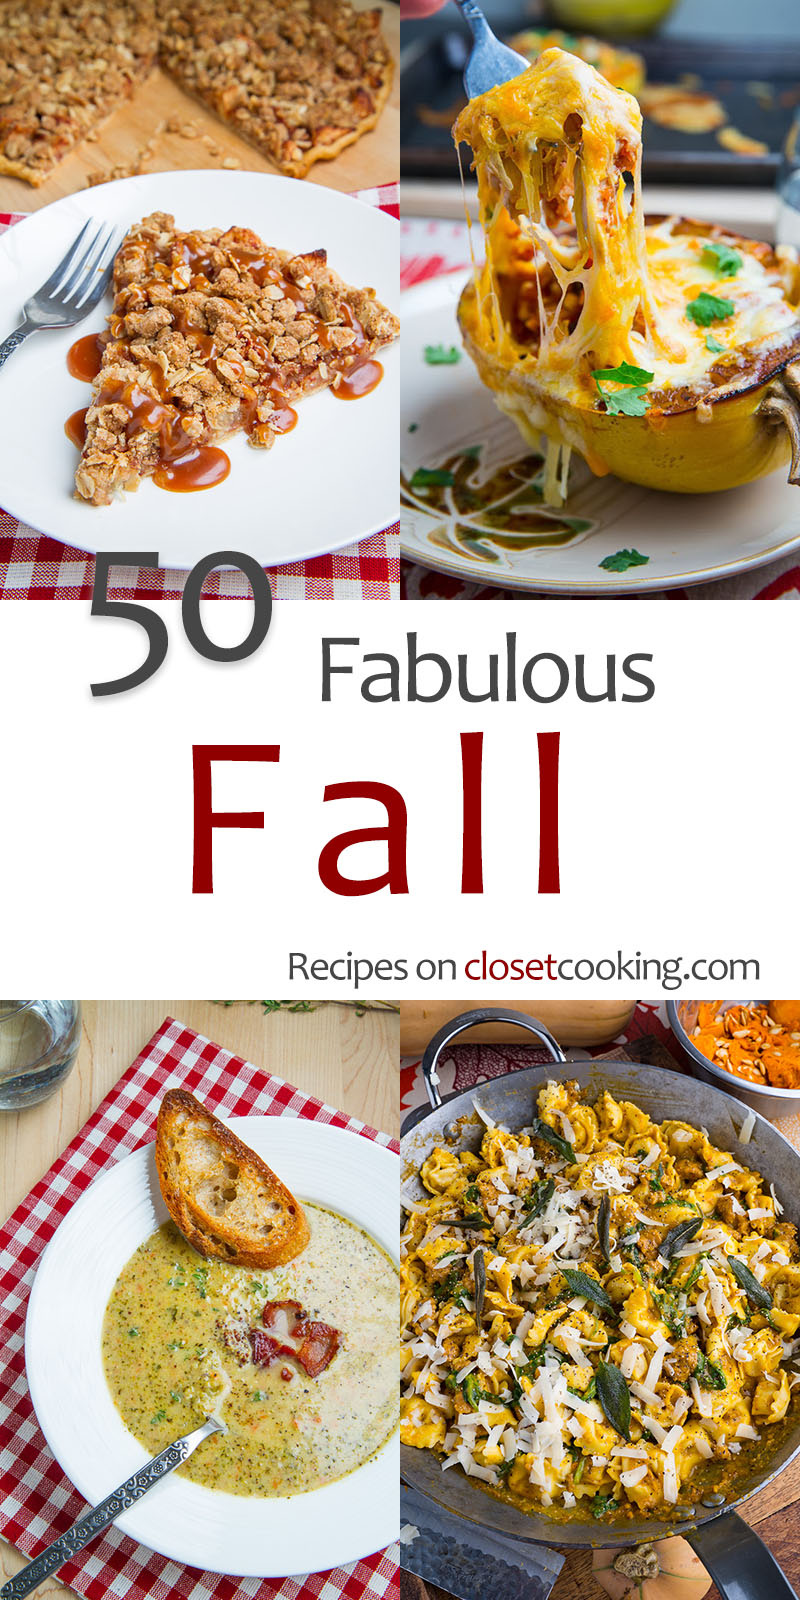 50 Fabulous Fall Recipes